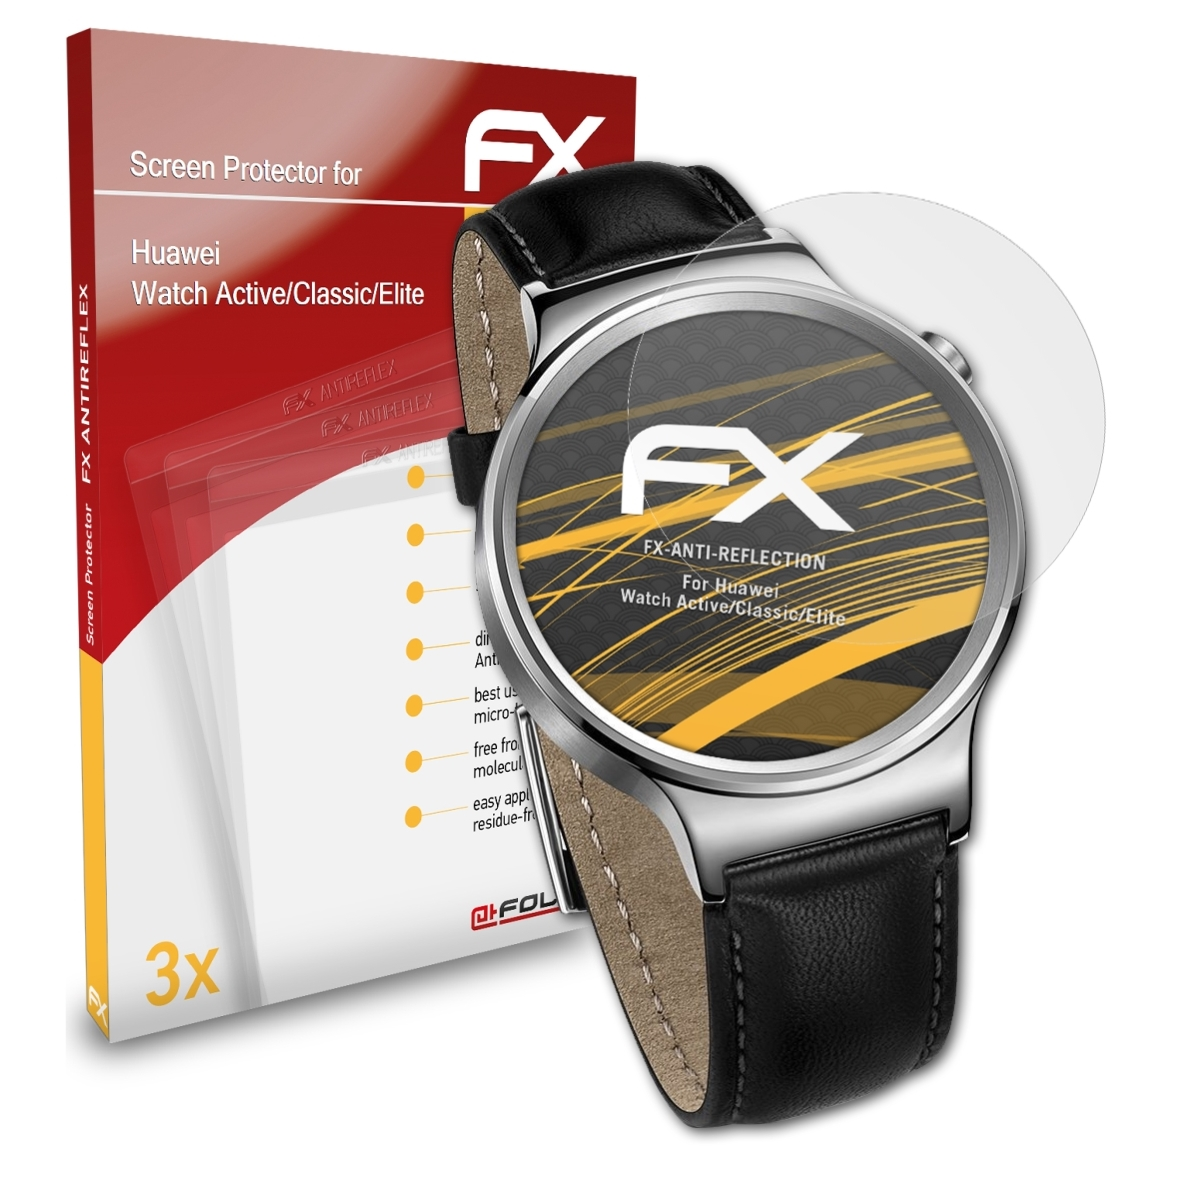 Active/Classic/Elite) Watch ATFOLIX Displayschutz(für 3x Huawei FX-Antireflex